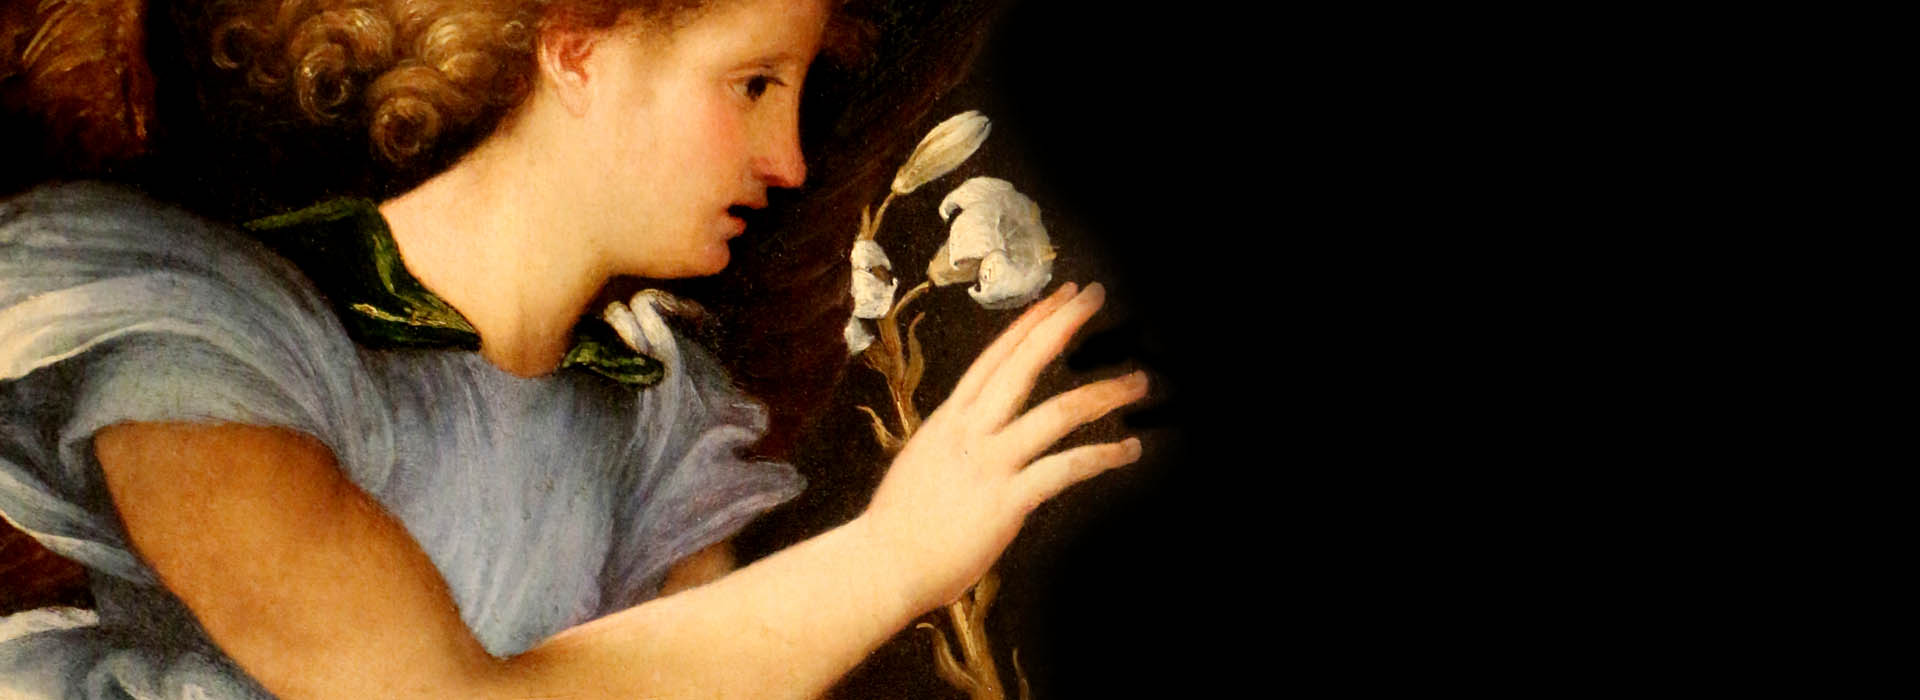 Lorenzo Lotto. The Renaissance in the Marche